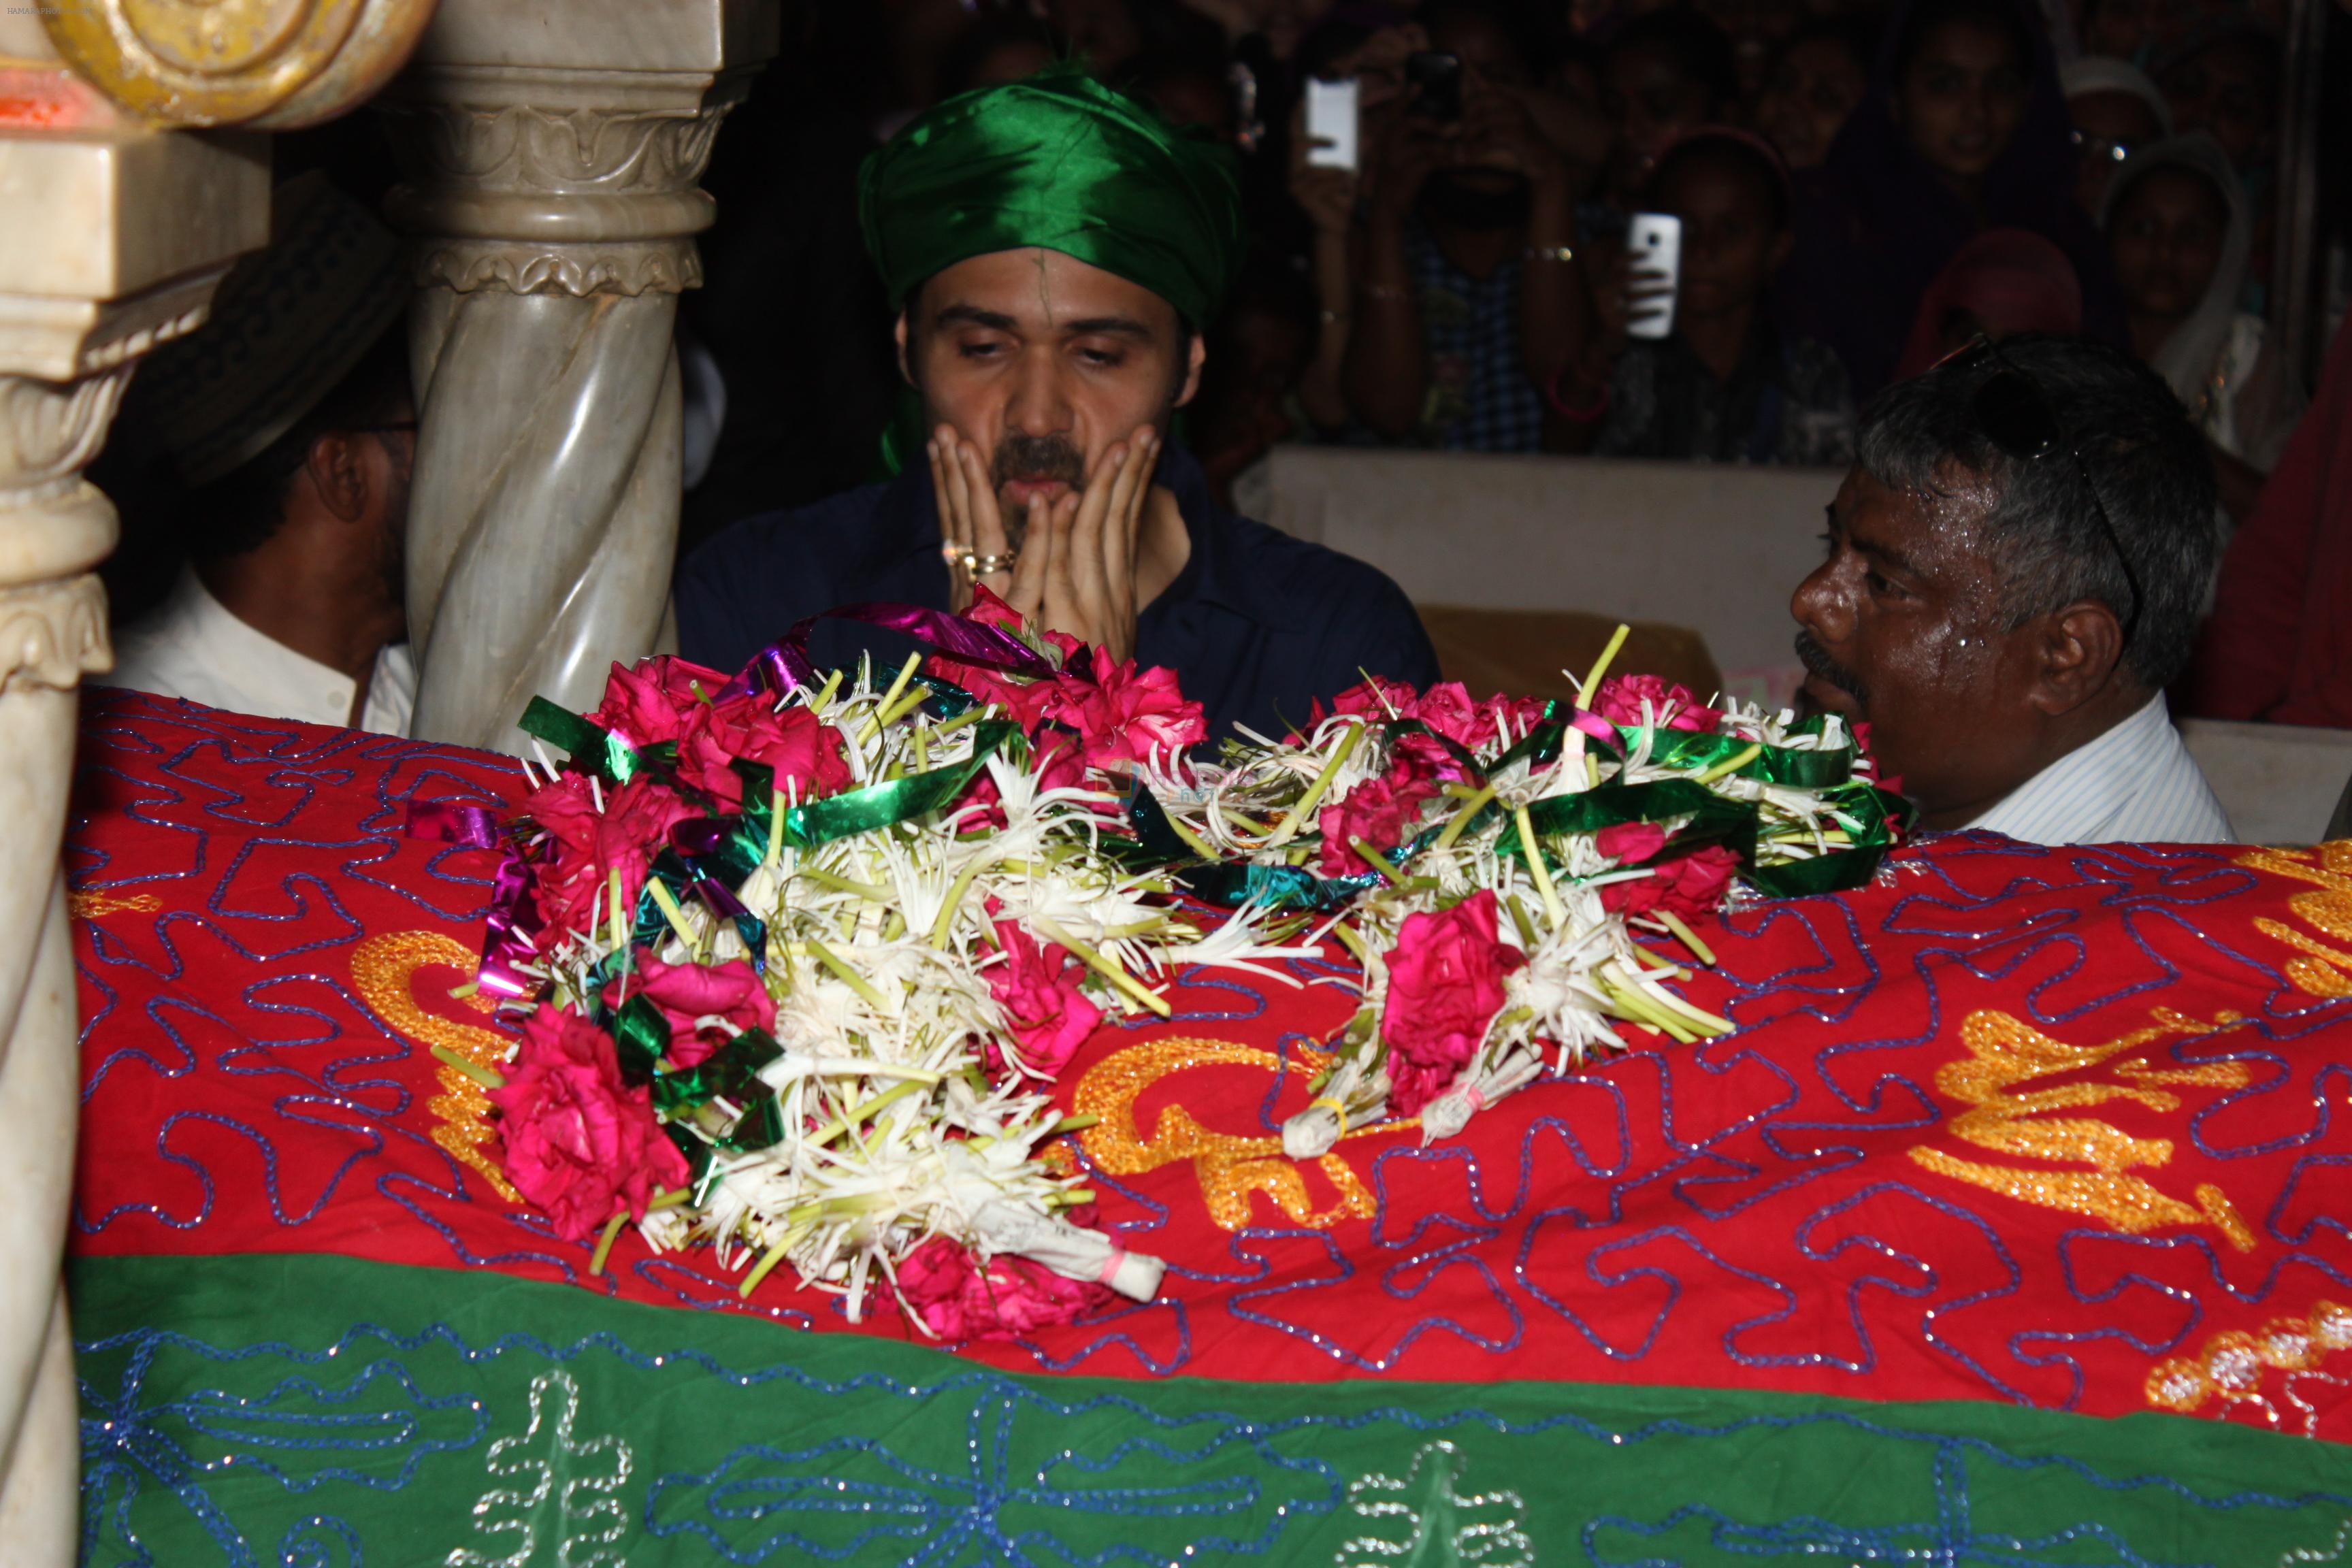 Emraan Hashmi visits Haji Ali for Ek Thi Daayan on 18th April 2013